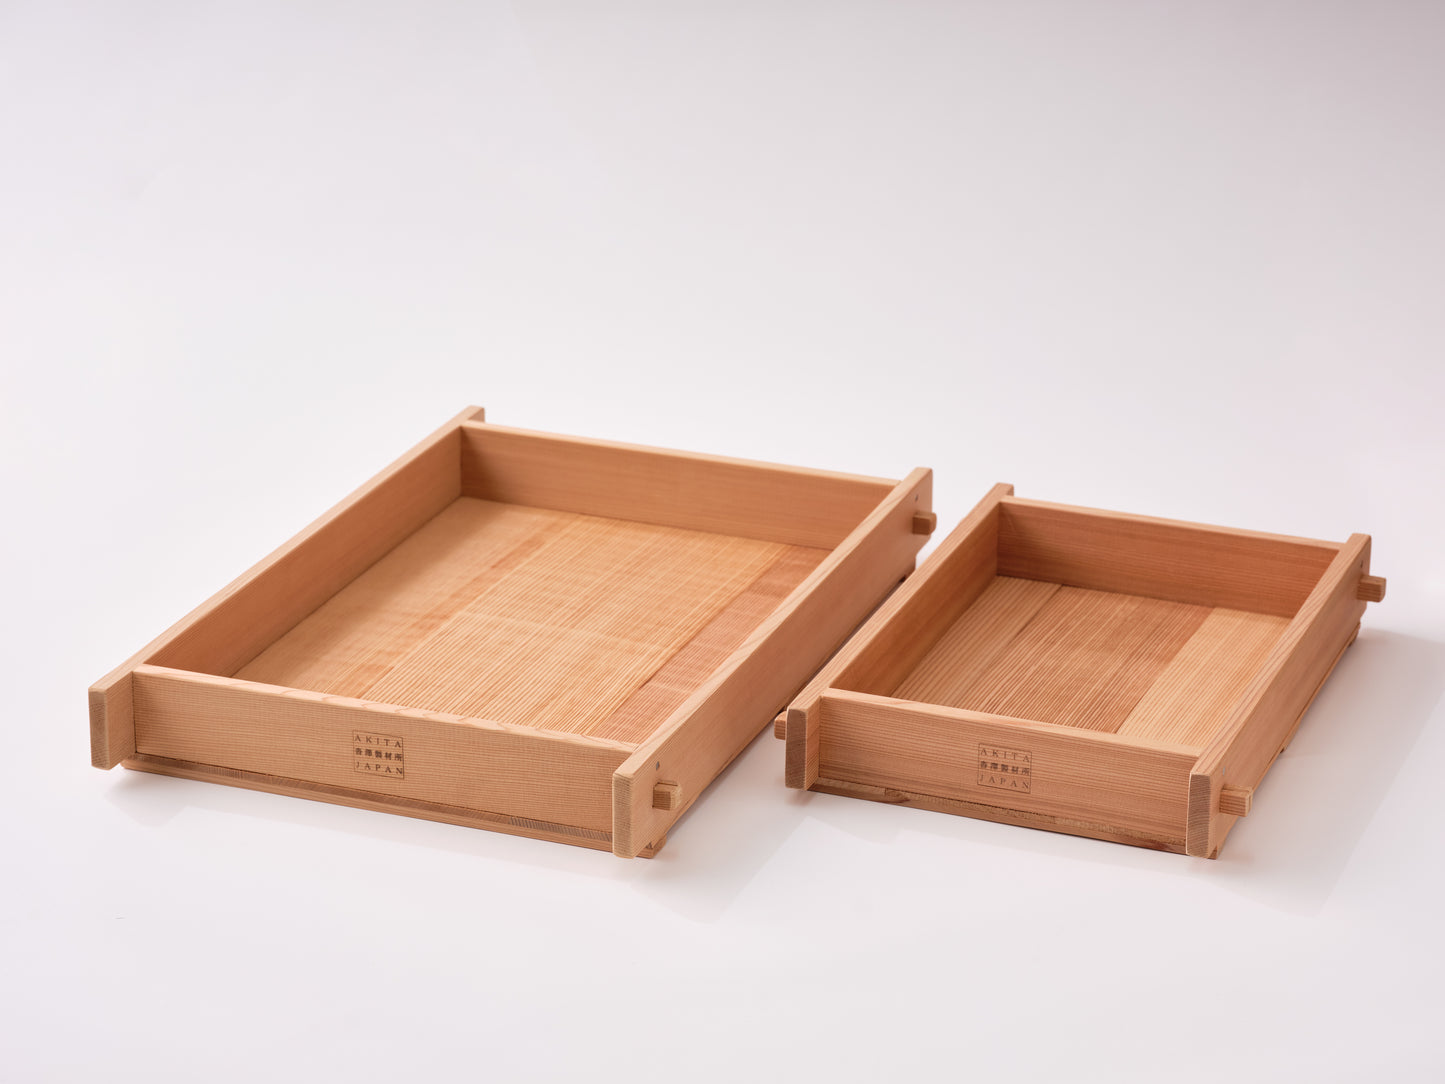 Akita Sugi Koji Buta  (small / large) - Koji tray from Akita, Japan